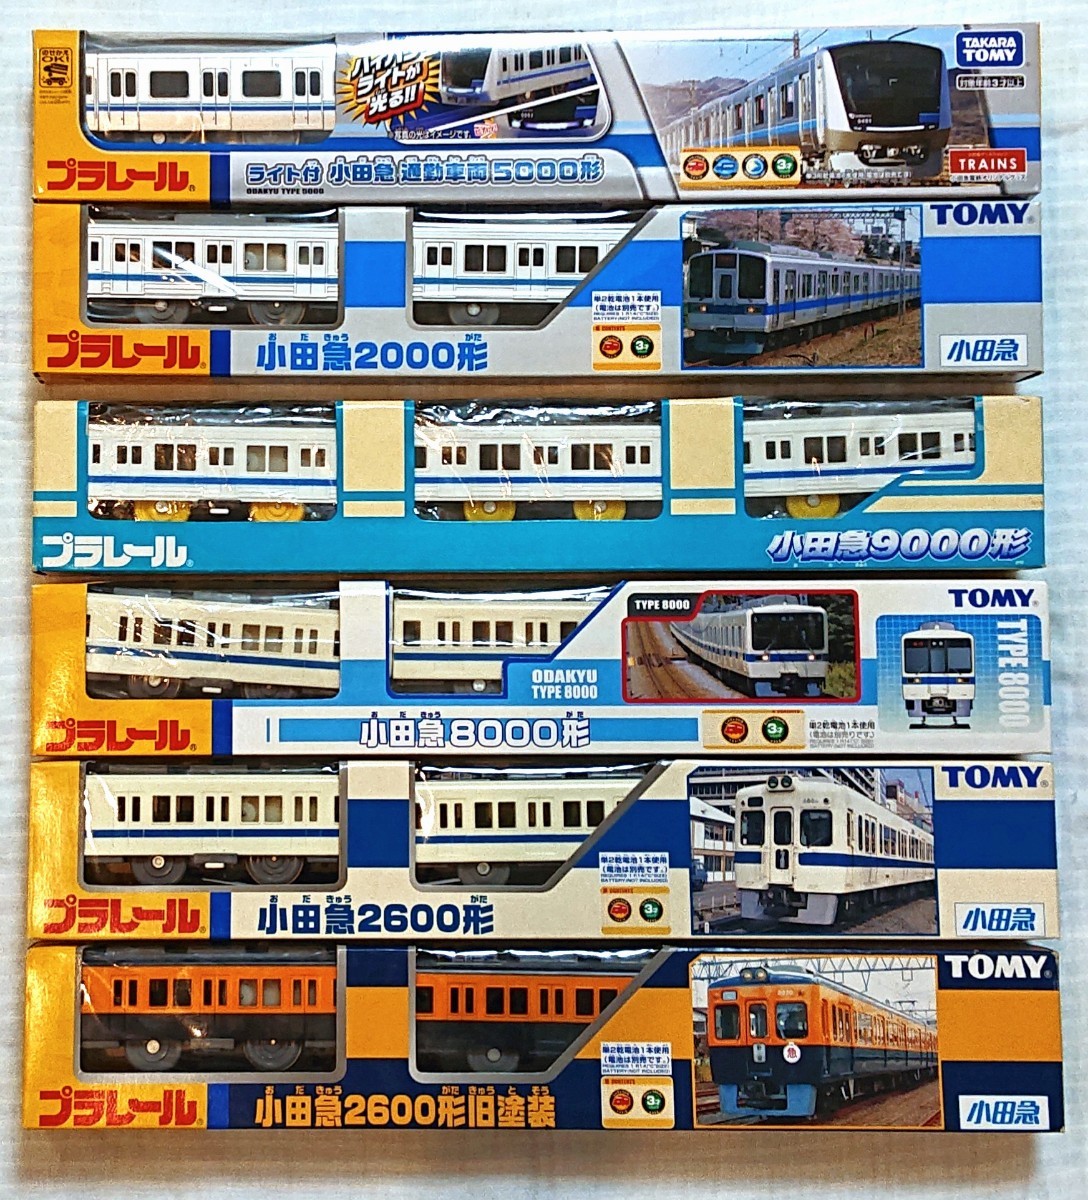 プラレール 小田急 小田急電鉄 ロマンスカー 2000形 8000形 限定品-